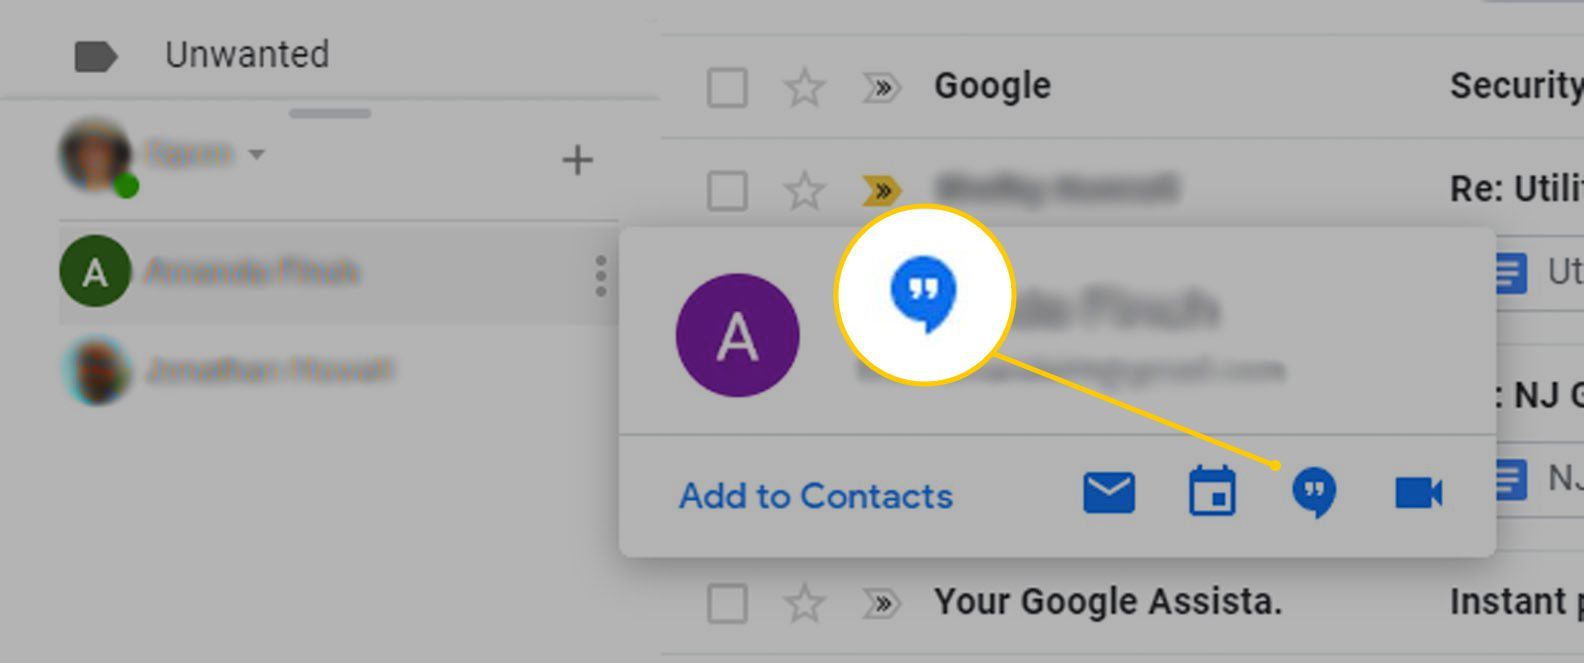 Кнопка отправки сообщения для видеовстречи в Gmail